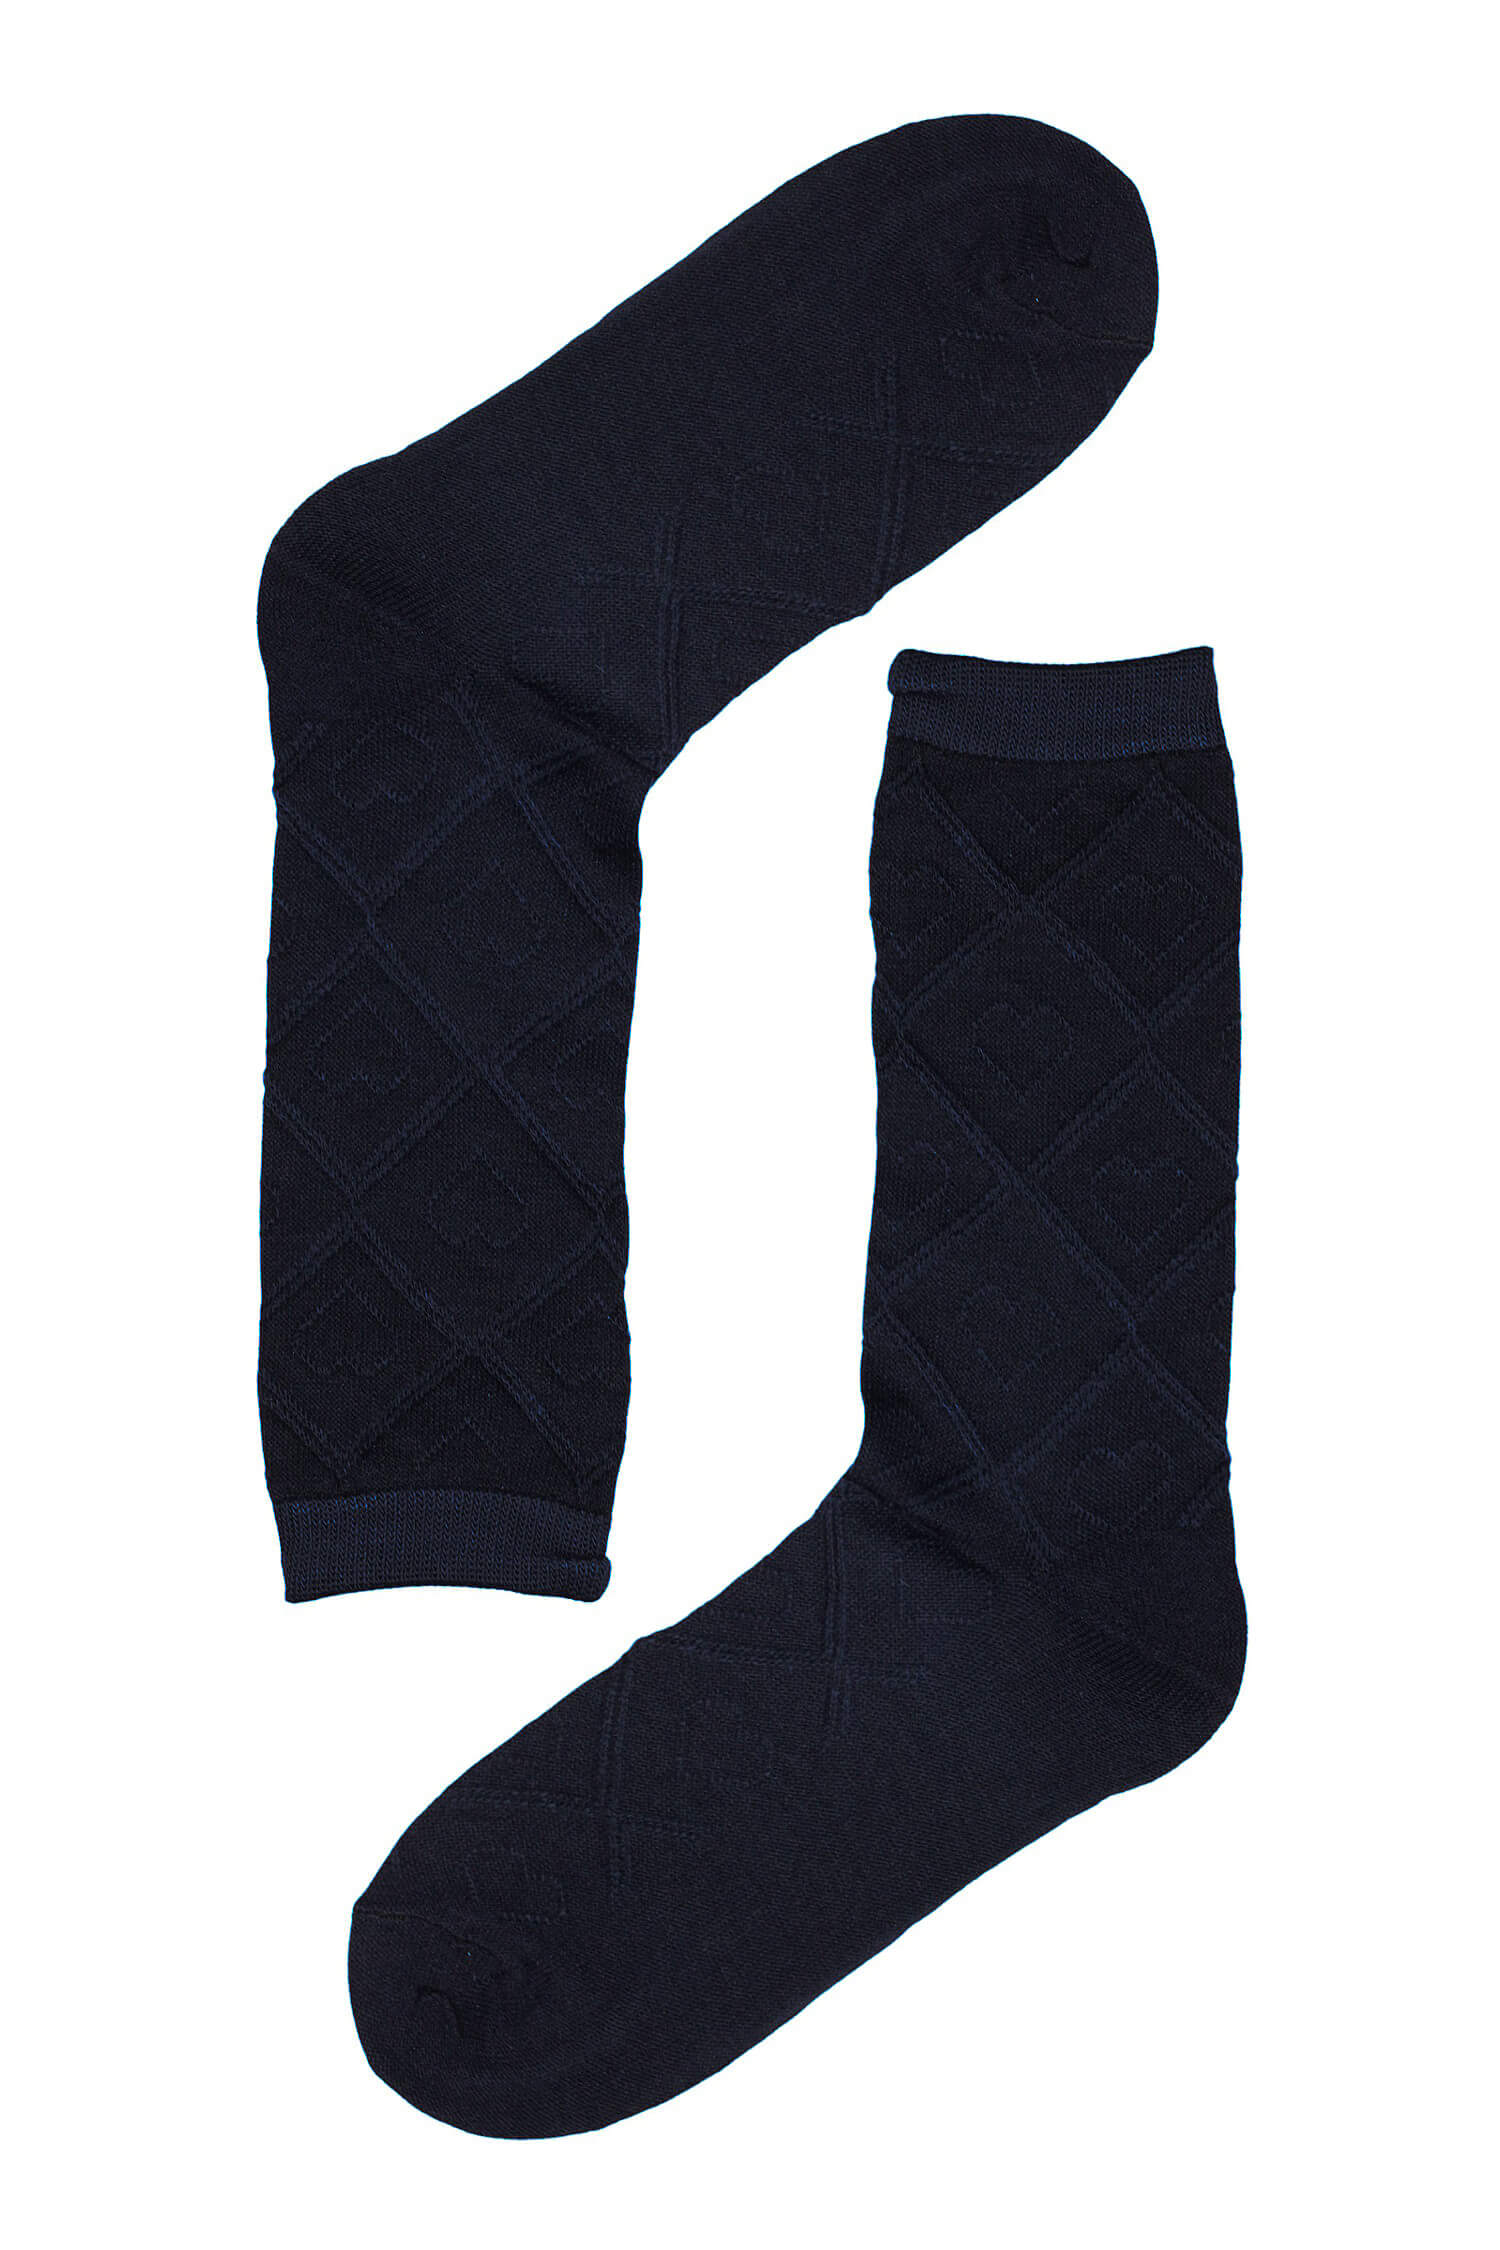 Dámské ponožky se vzorem srdíček SK-236 35-38 tmavě modrá